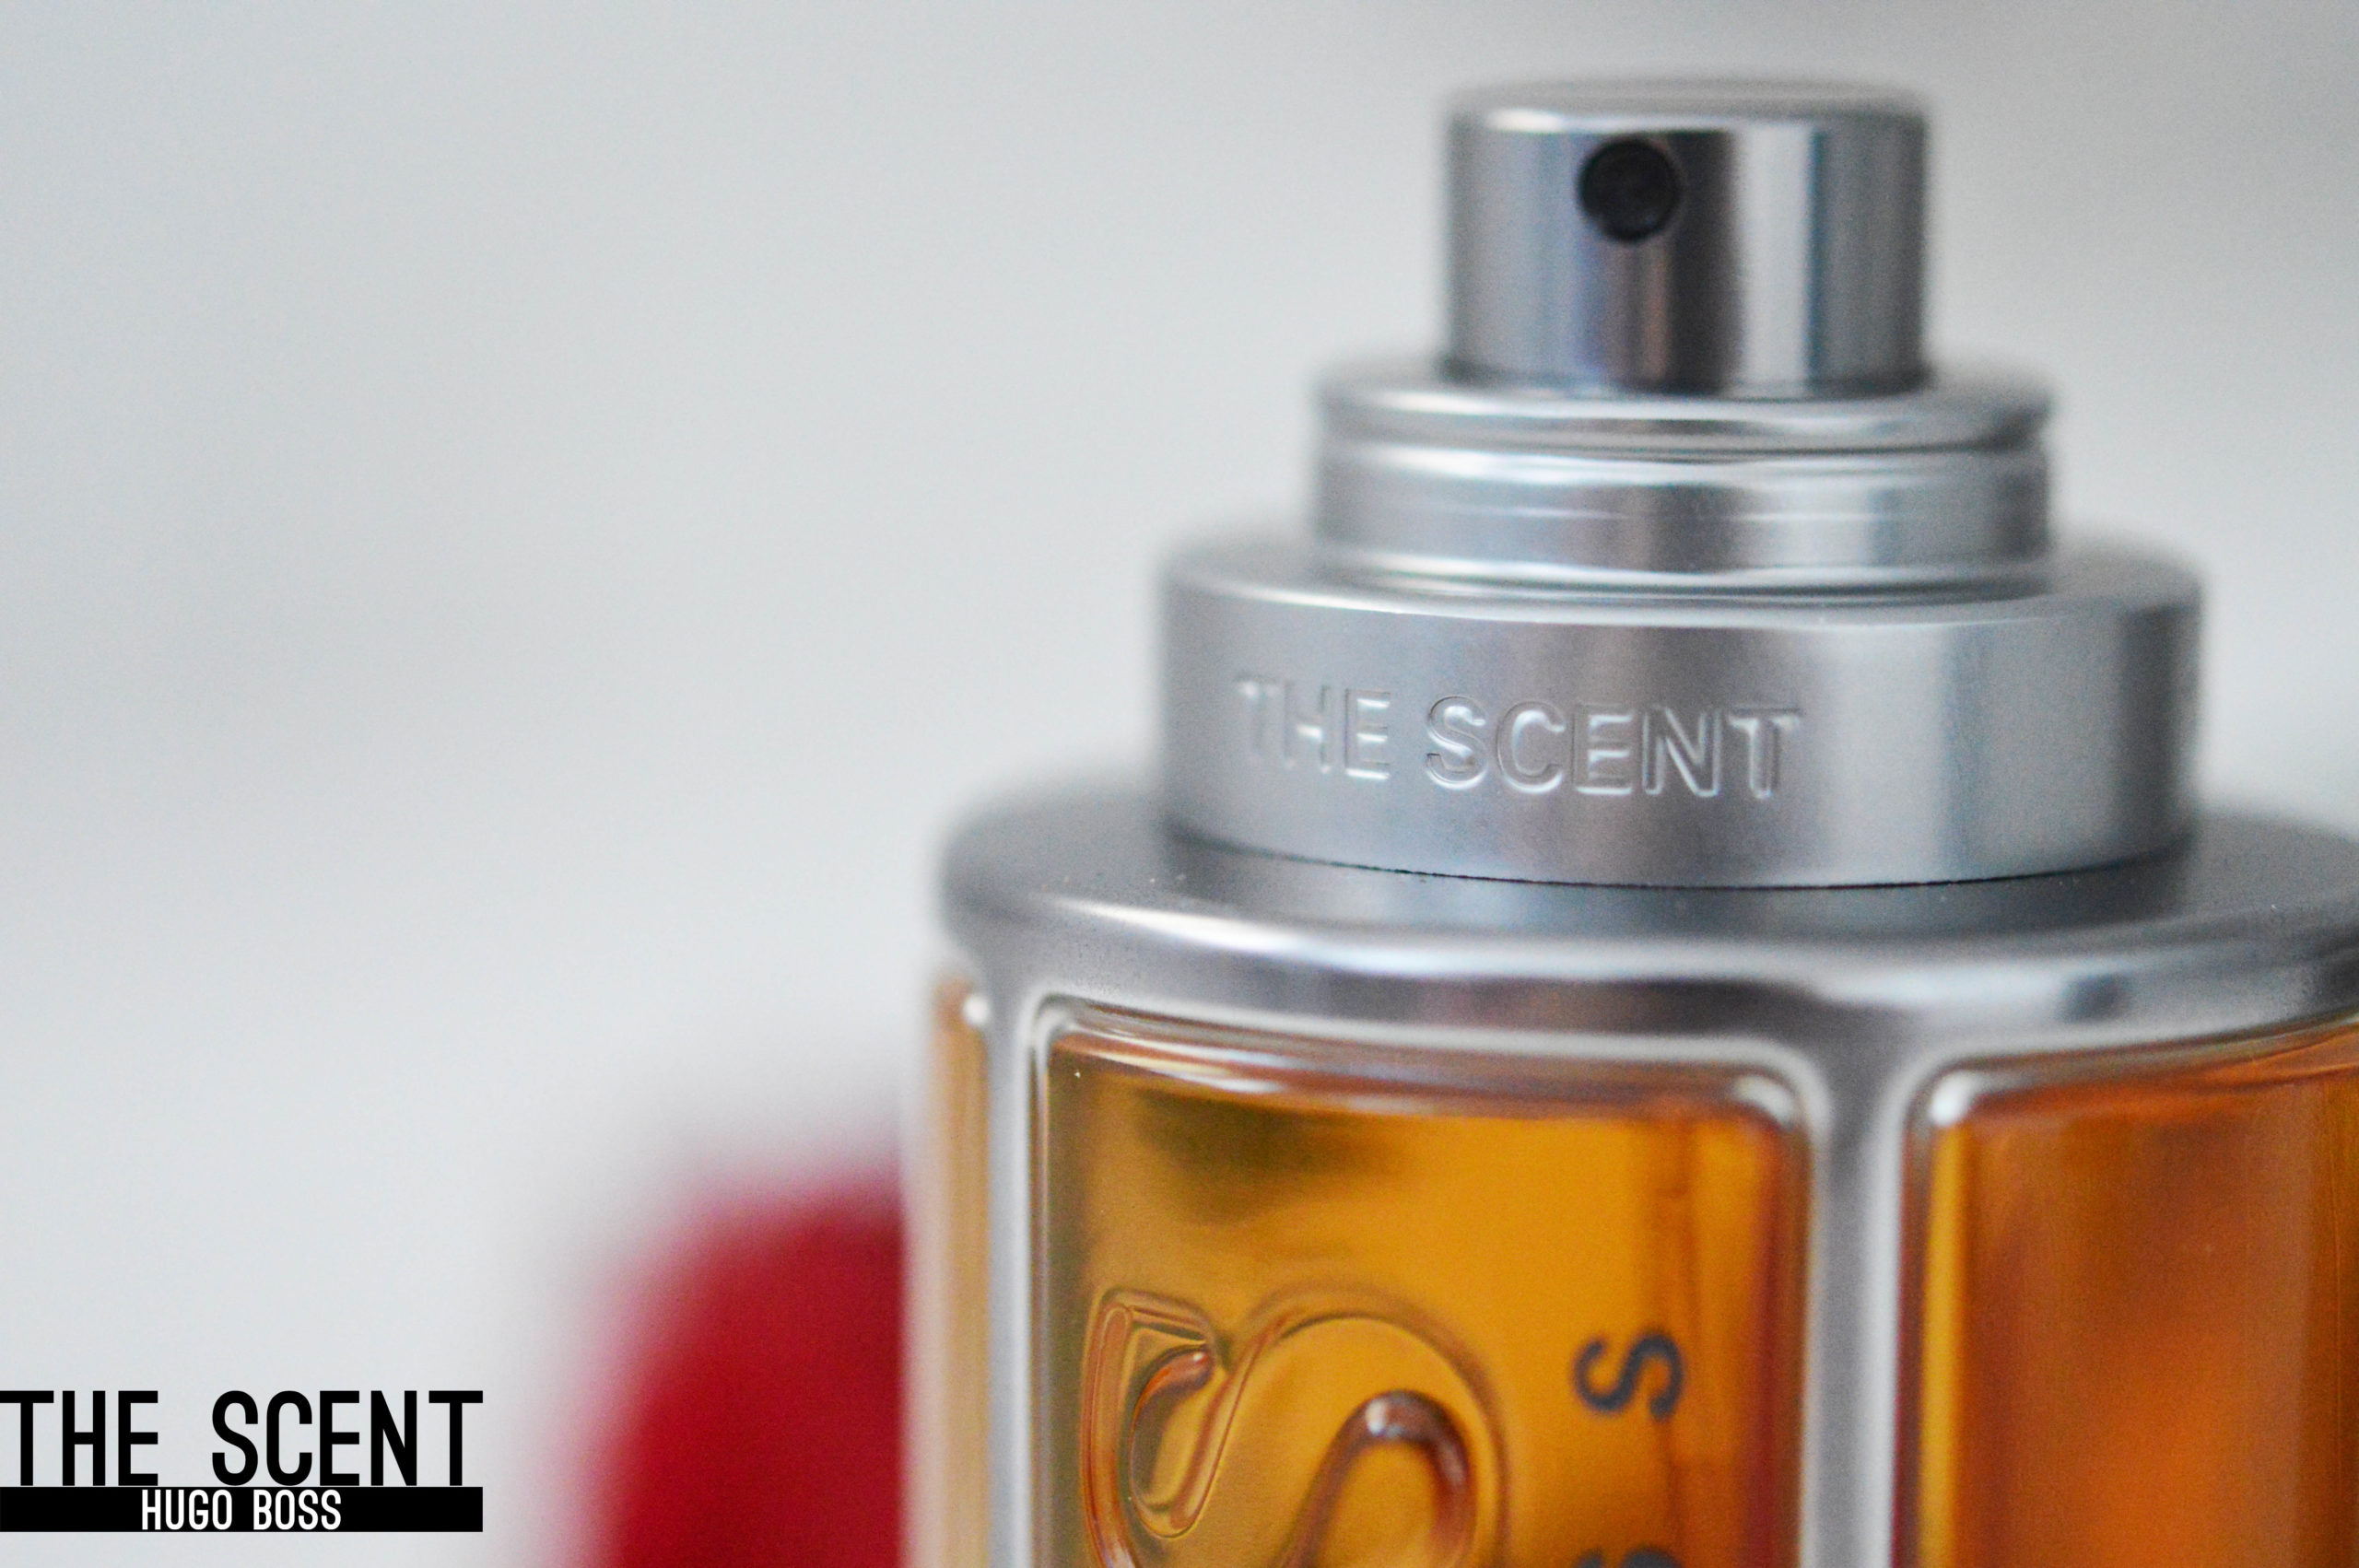 détail de l'embout spray du parfum The Scent